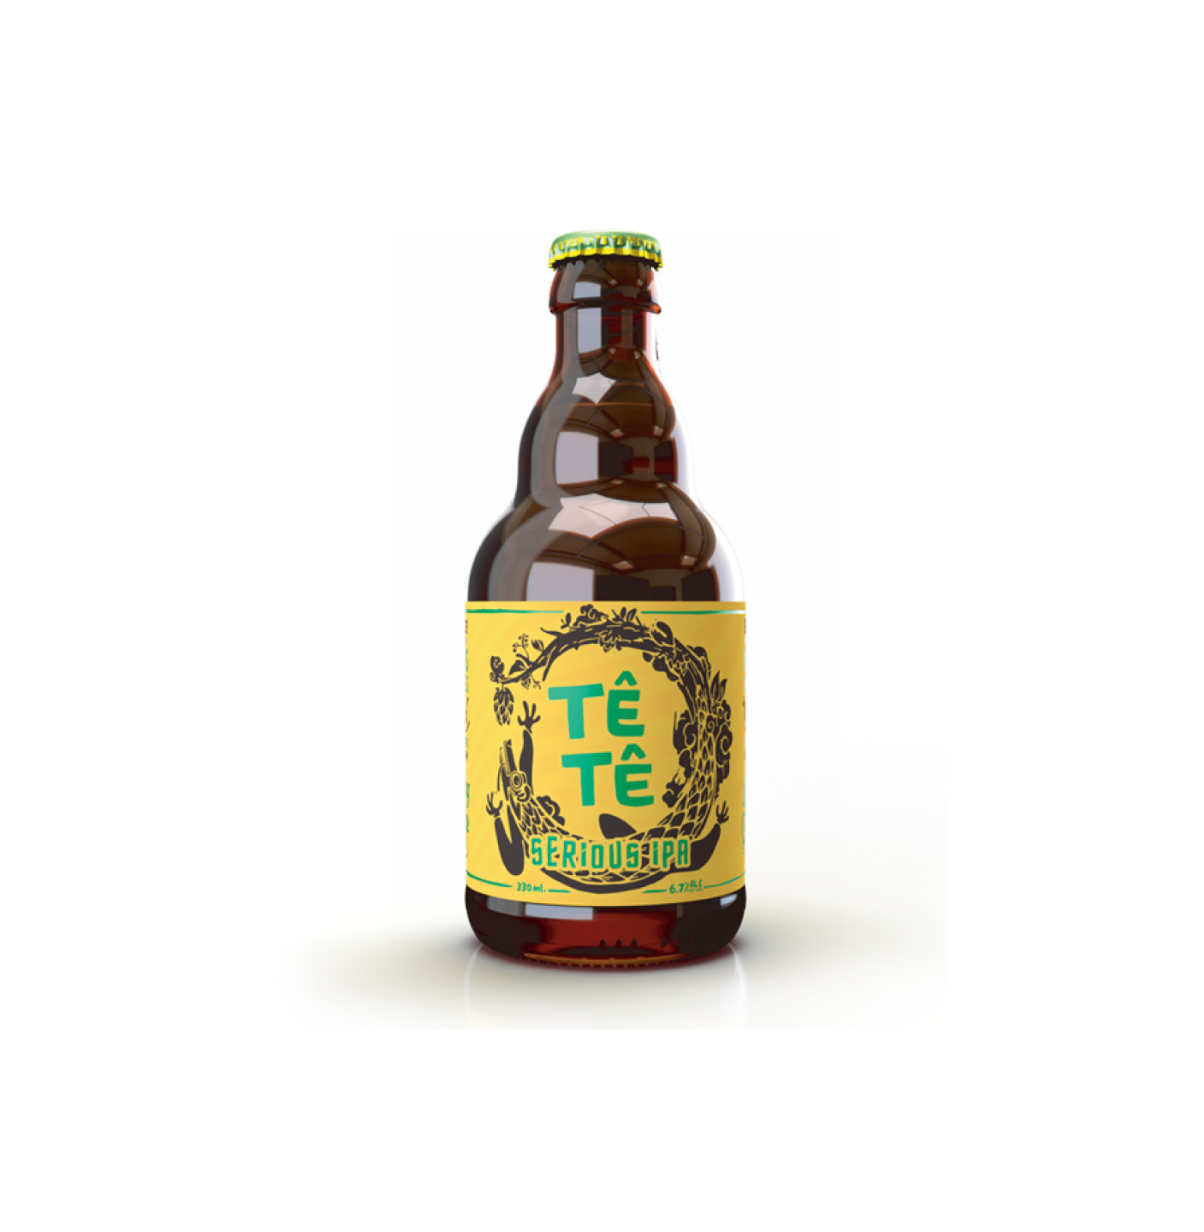 【30元4支】TeTe Serious IPA 手工啤酒 330ml